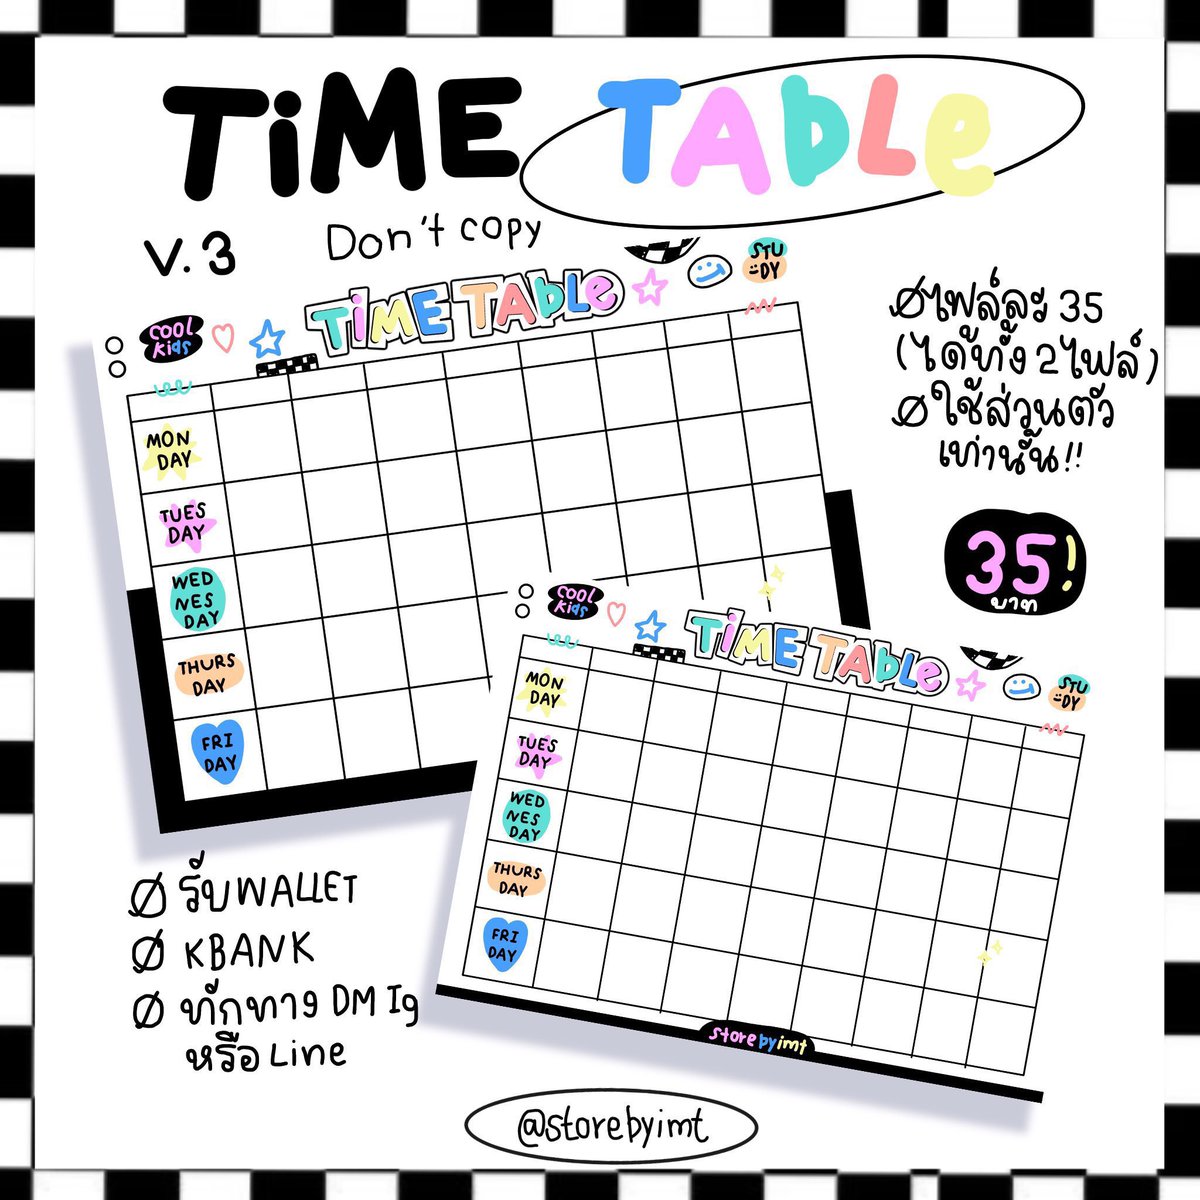 set timetable Ⓜ️🖍ได้ทั้ง 2 ไฟล์ ราคาเพียง 35 บาทเท่านั้น !
( สนใจทักDMหรือจิ้มลิงค์หน้าทวิตได้เลยคับ) 

#png #pngน่ารัก #timetable #ตารางสอน #ฟอนต์ลายมือ #digitalplanner #แจกpng